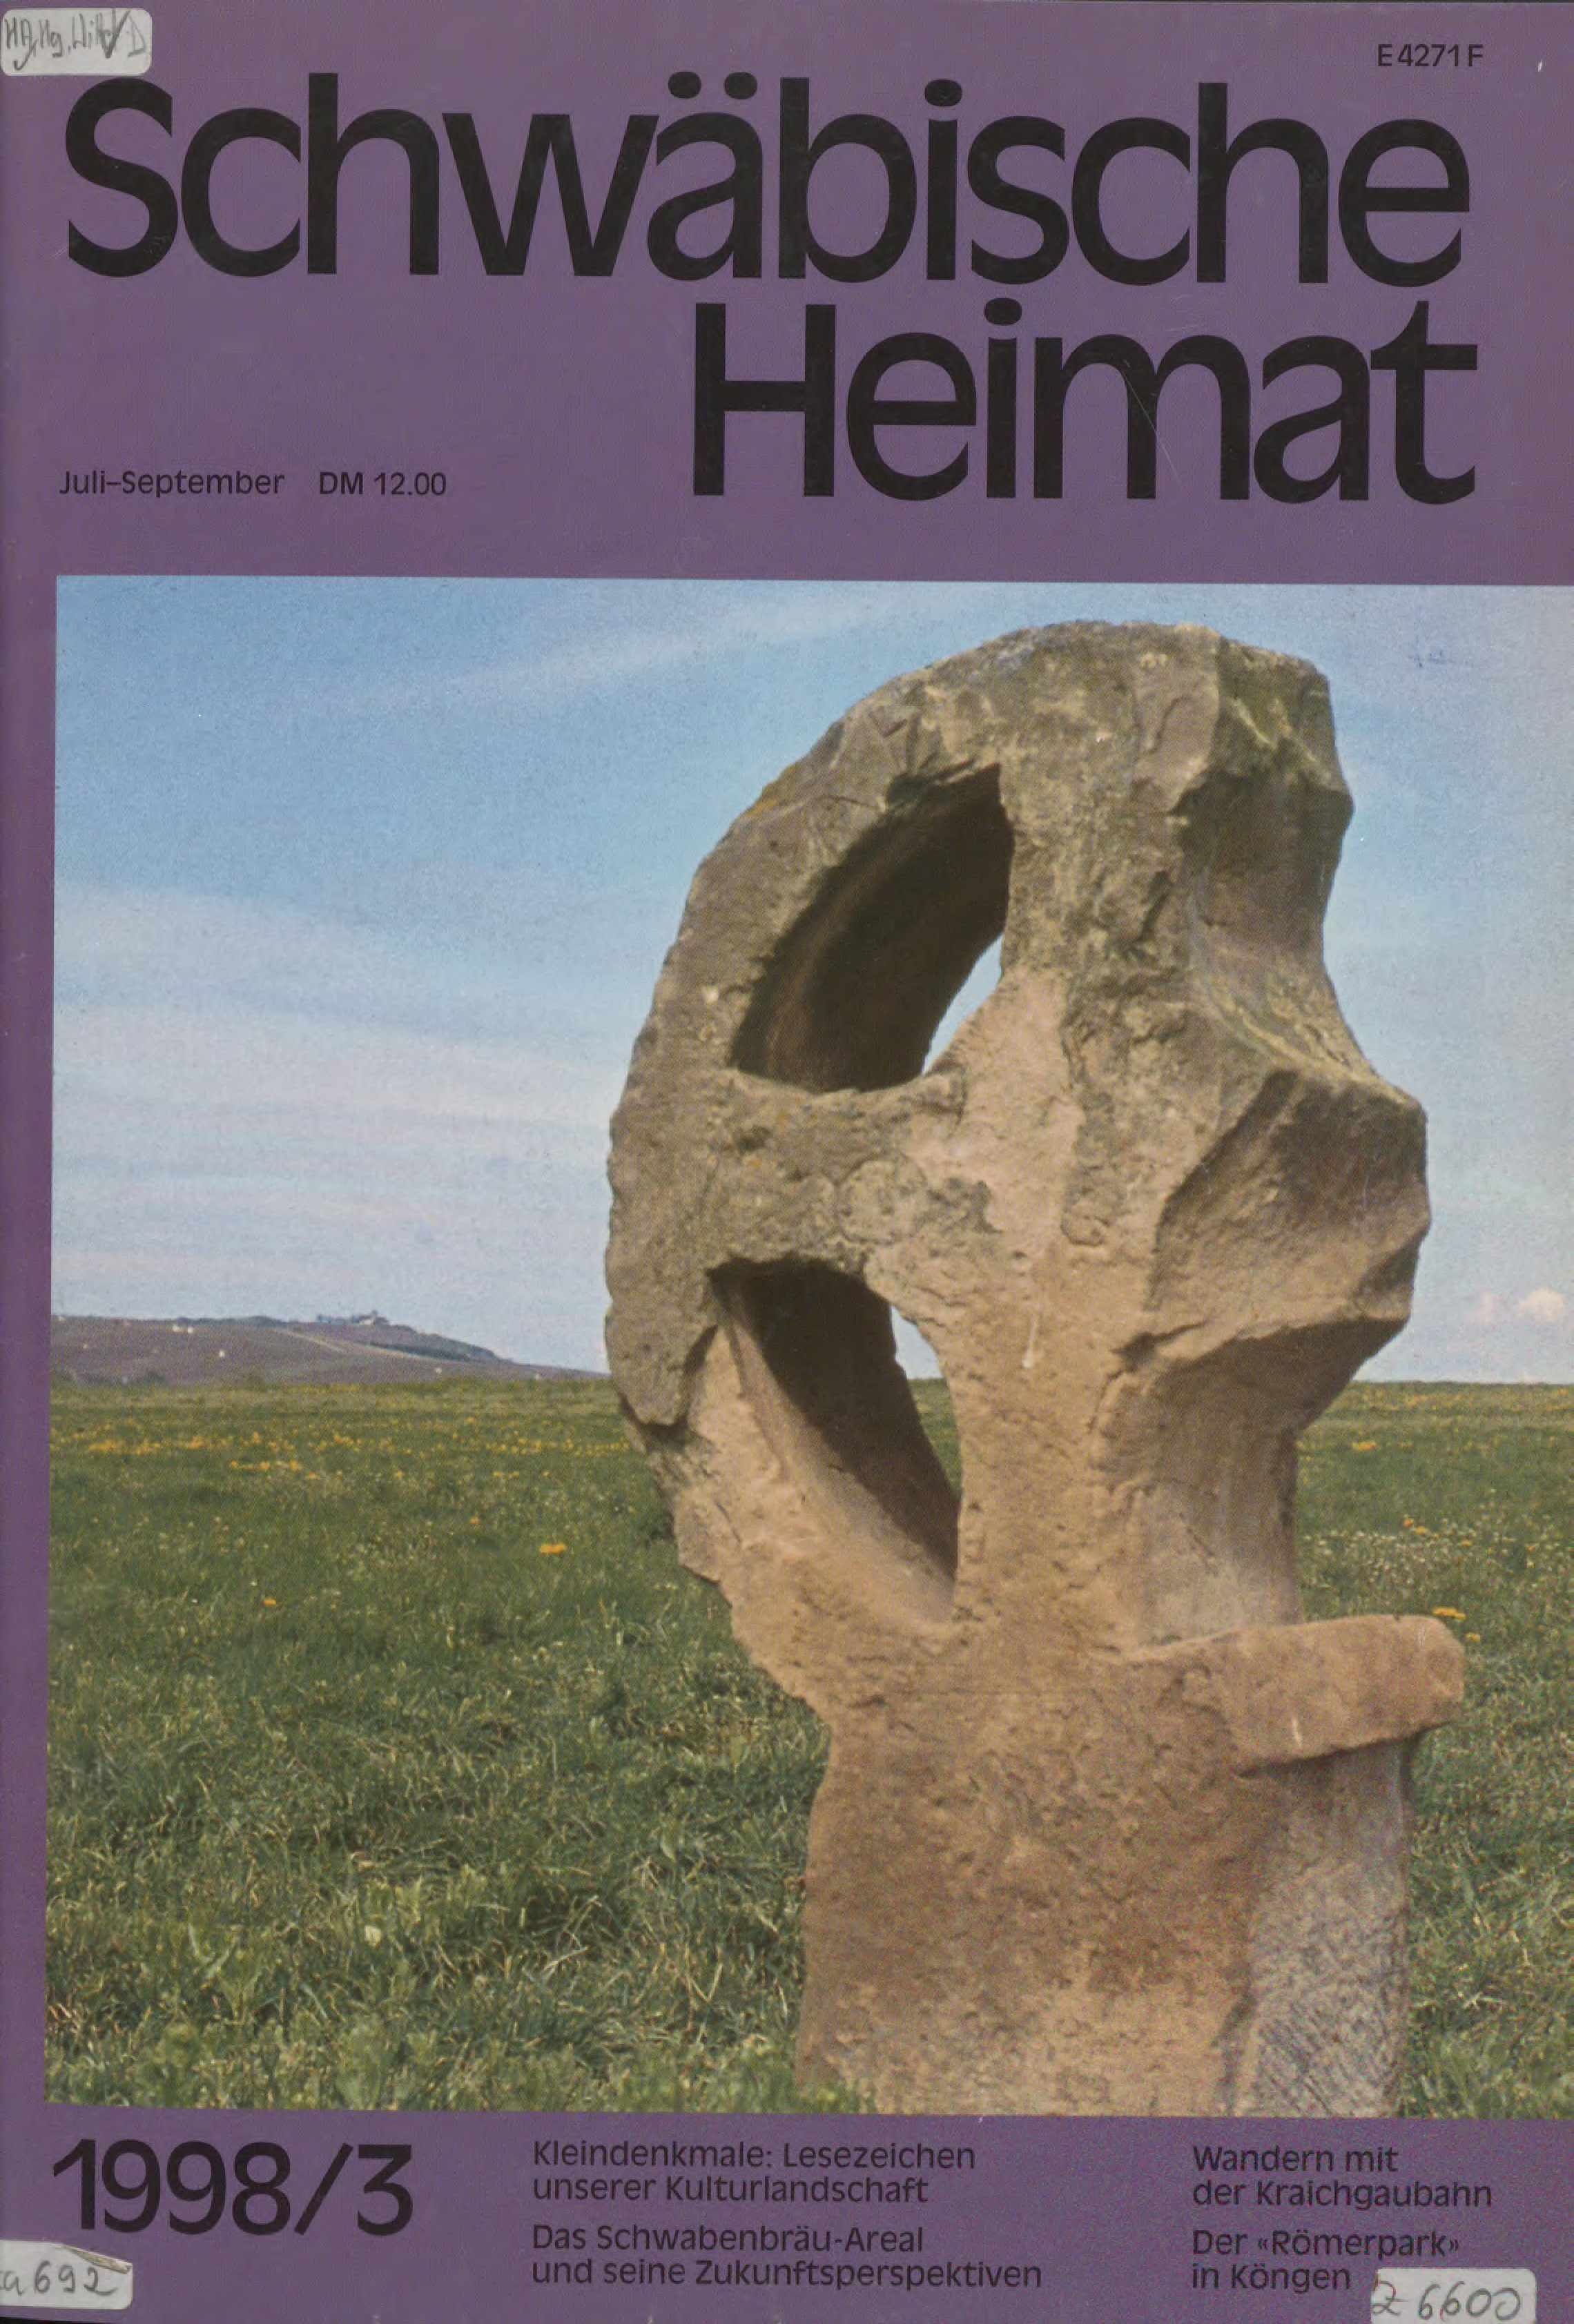                     Ansehen Bd. 49 Nr. 3 (1998): Schwäbische Heimat
                